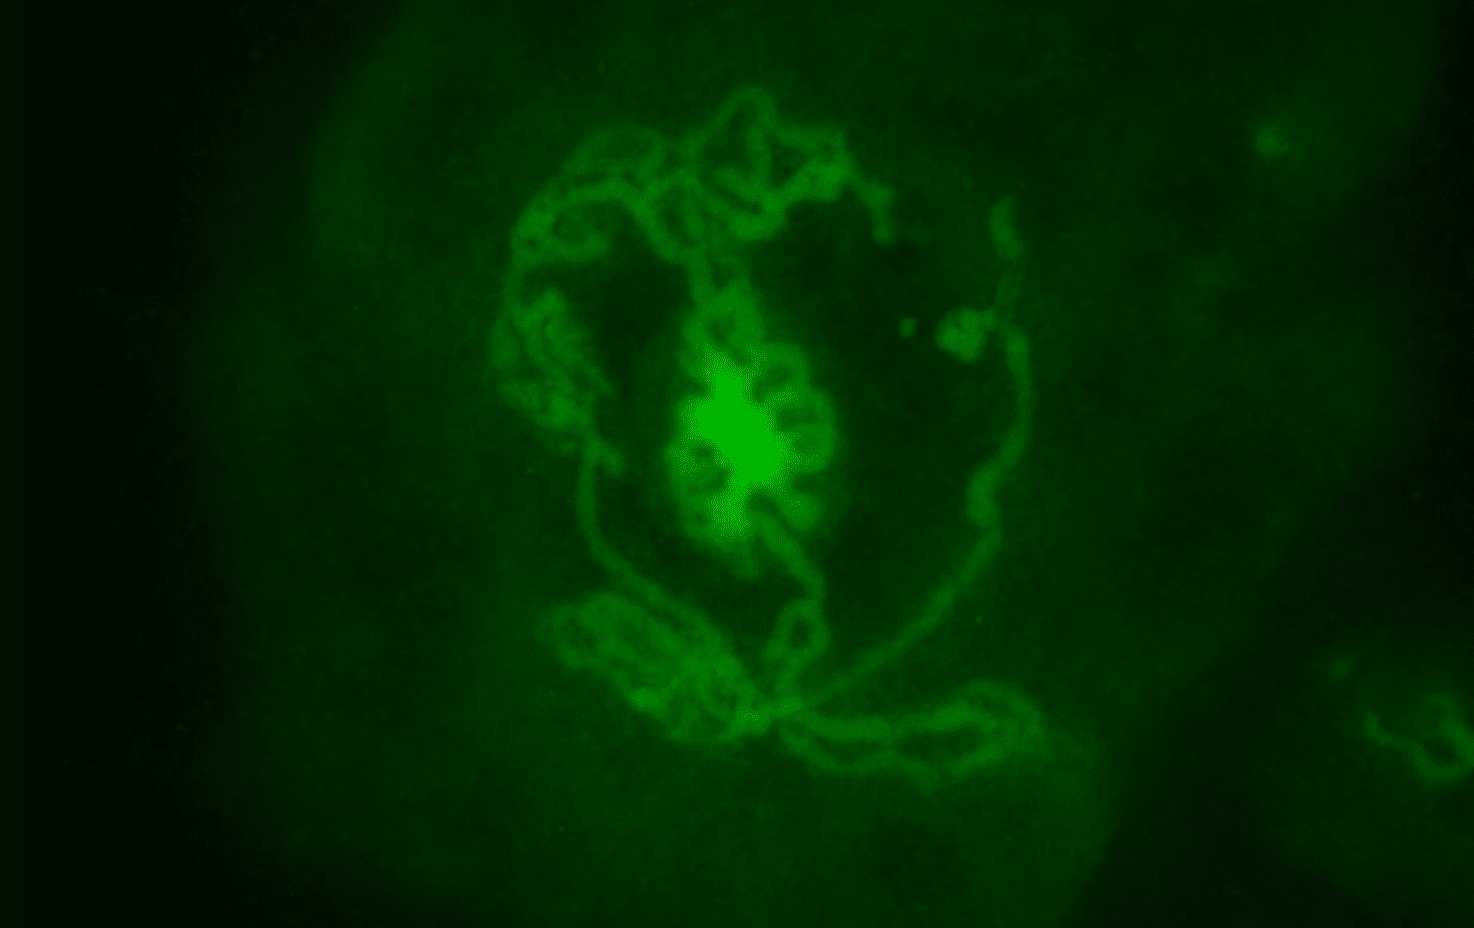 En fluorescerande bild av en testikelorganoid skapad av musembryon och inkuberad i en skål i 14 dagar. De rörformade strukturerna som bildas i skålen är tydligt synliga. Markerade i grönt är Sertoli-celler, som är de celler som ansvarar för bildandet av tubuli i testikeln och faktiskt skapar tubuli i skålen. (KREDIT: Cheli Lev)